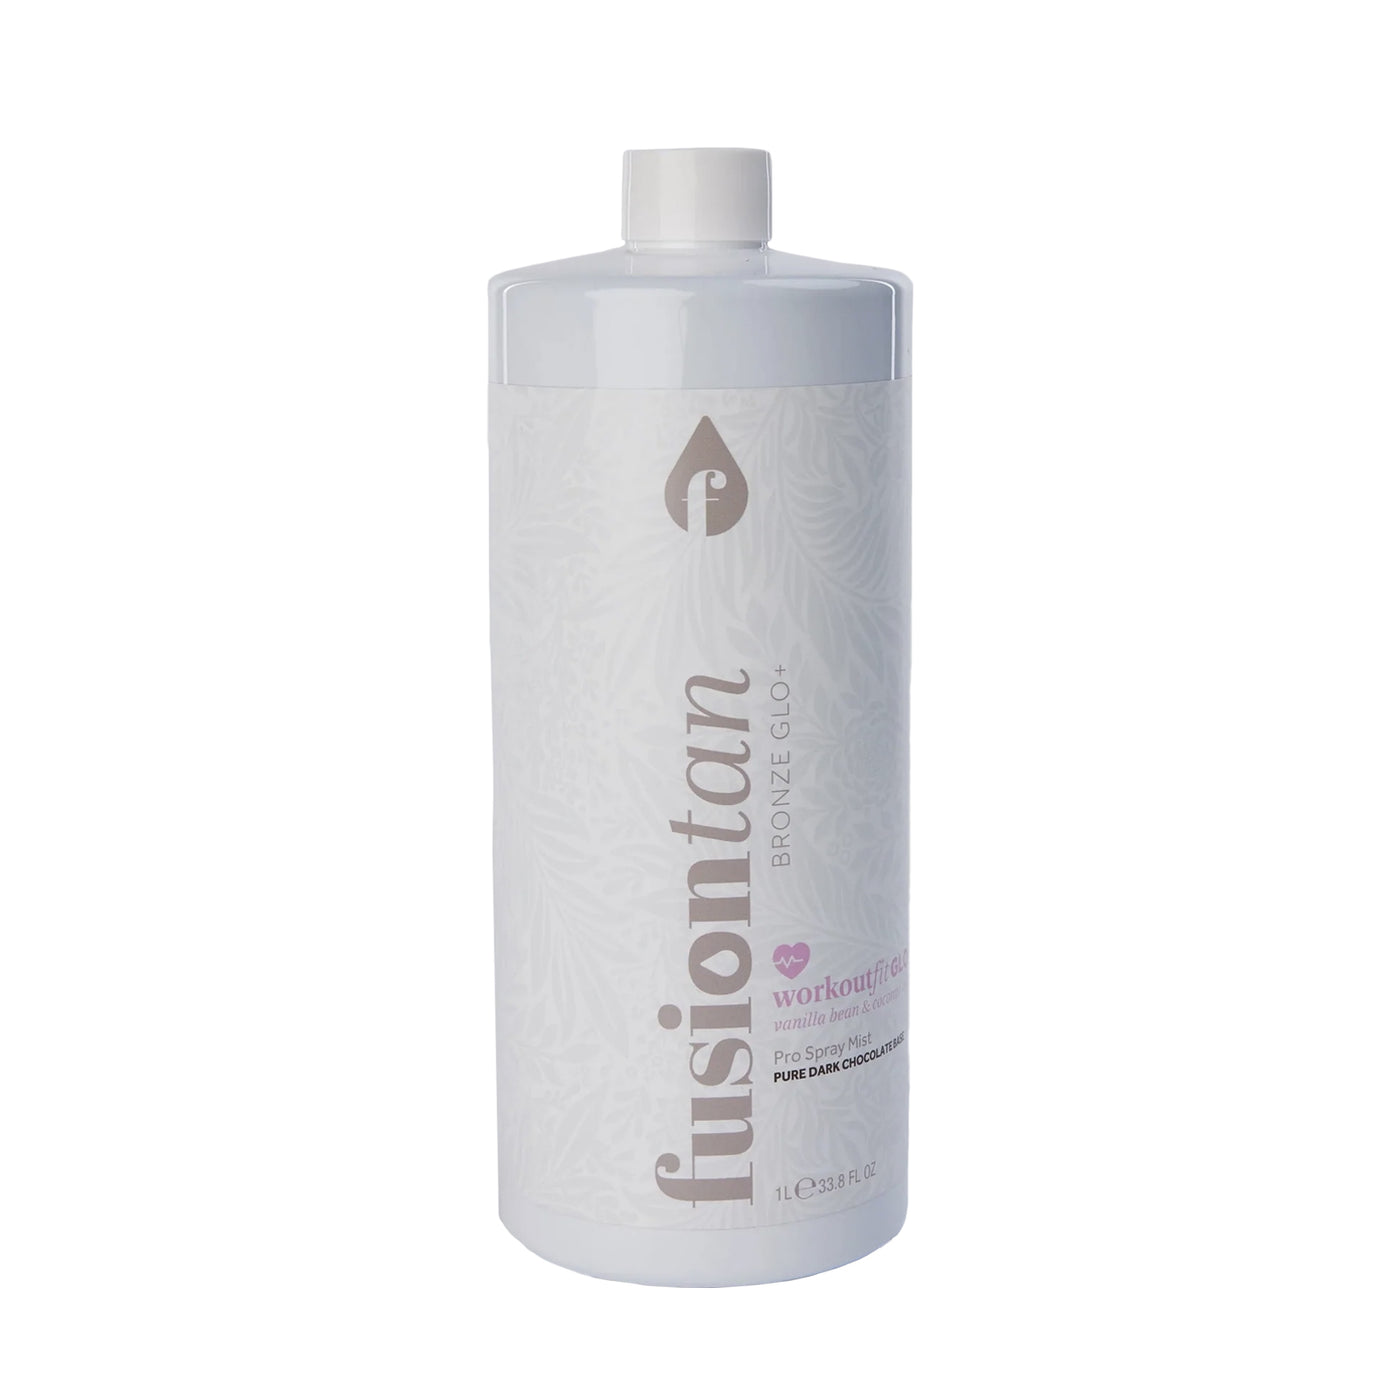 Fusion Tan Bronze WORKOUTfit GLO+ Pro Spray Tan Mist